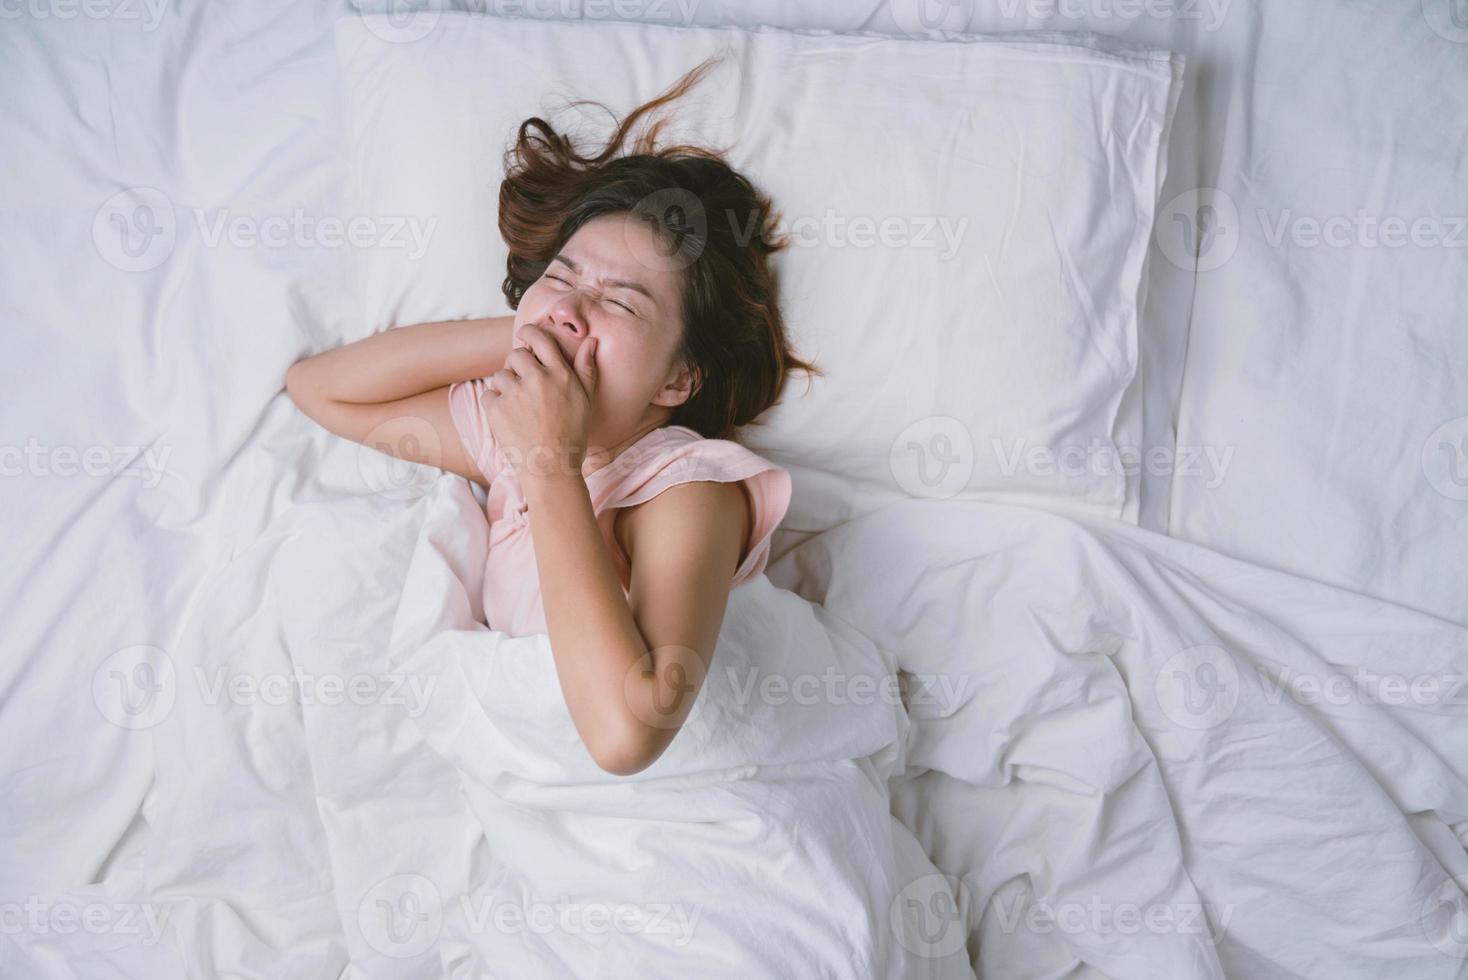 jeune femme dormant bien dans son lit étreignant un oreiller blanc doux. adolescente au repos. concept de bonne nuit de sommeil. une fille en pyjama dort sur un lit dans une pièce blanche le matin. ton chaud. photo